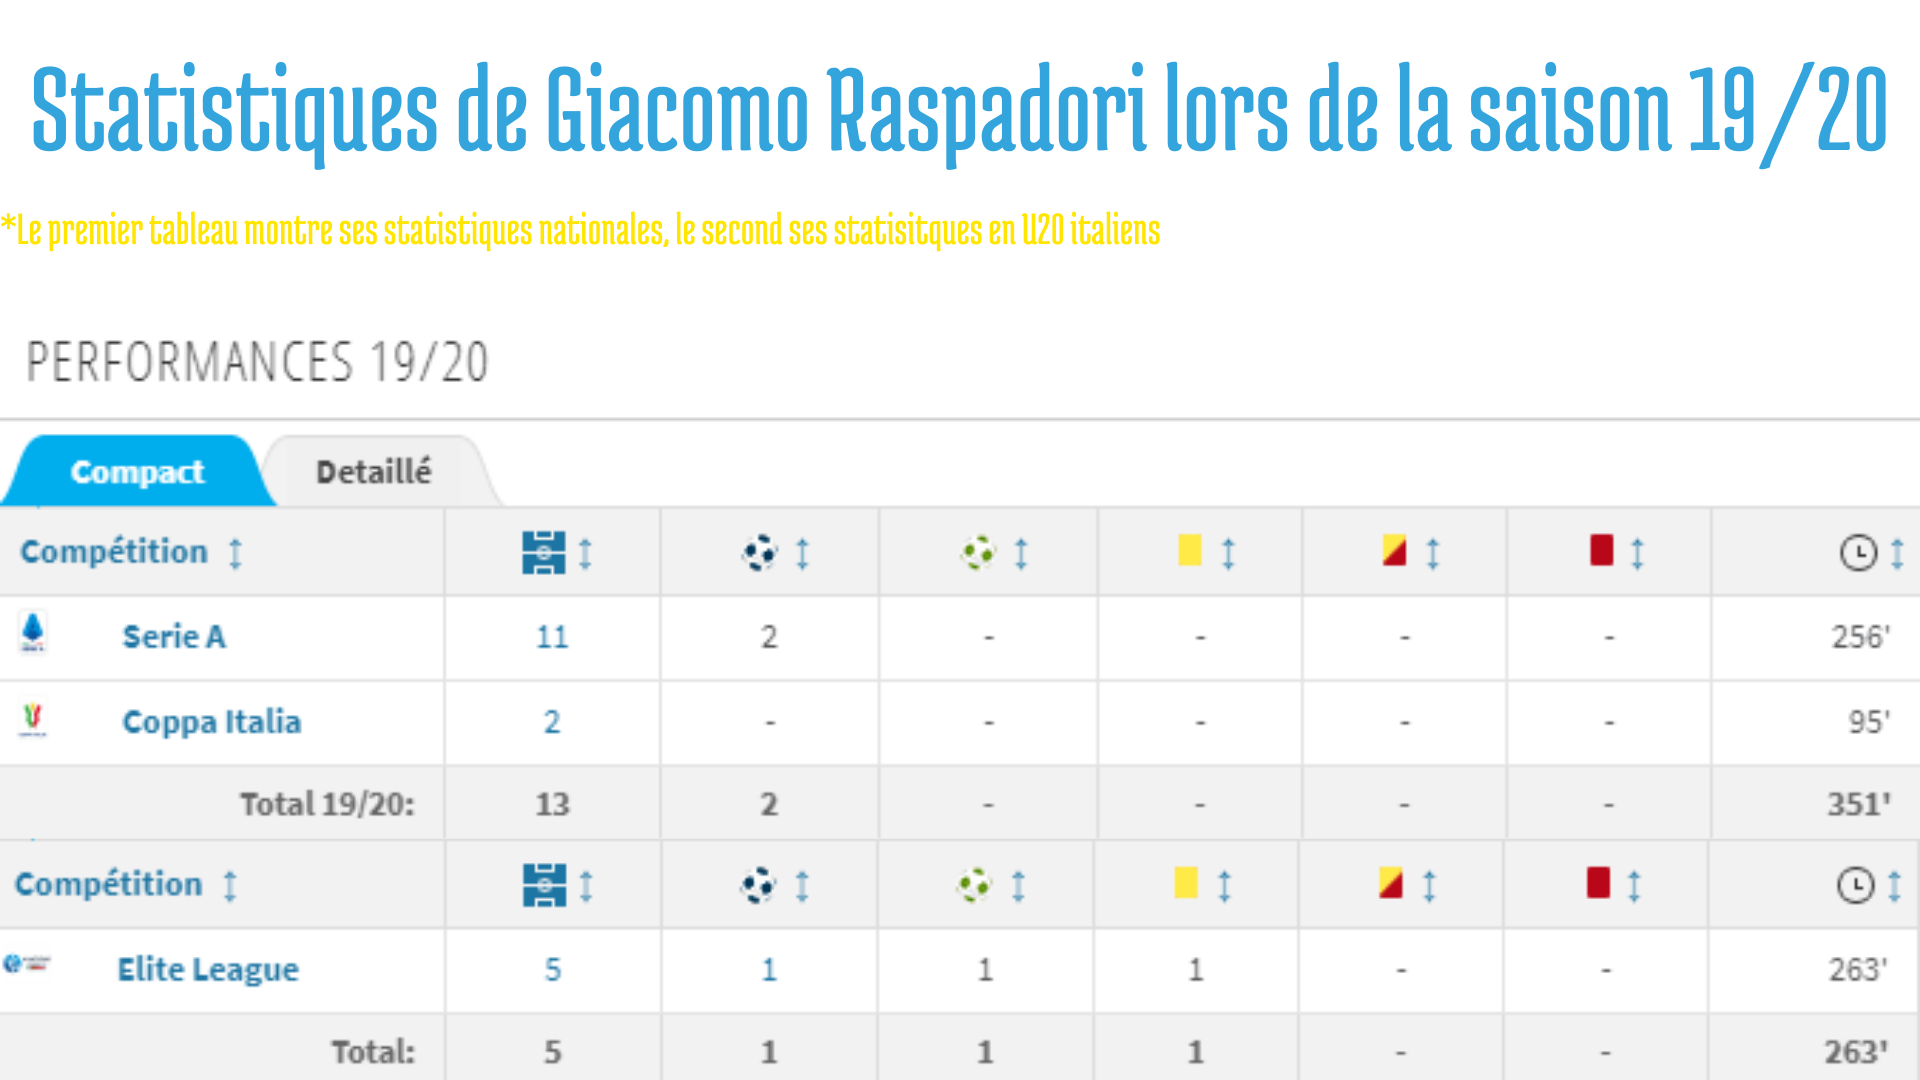 Statistiques de Giacomo Raspadori lors de sa première saison professionnelle.